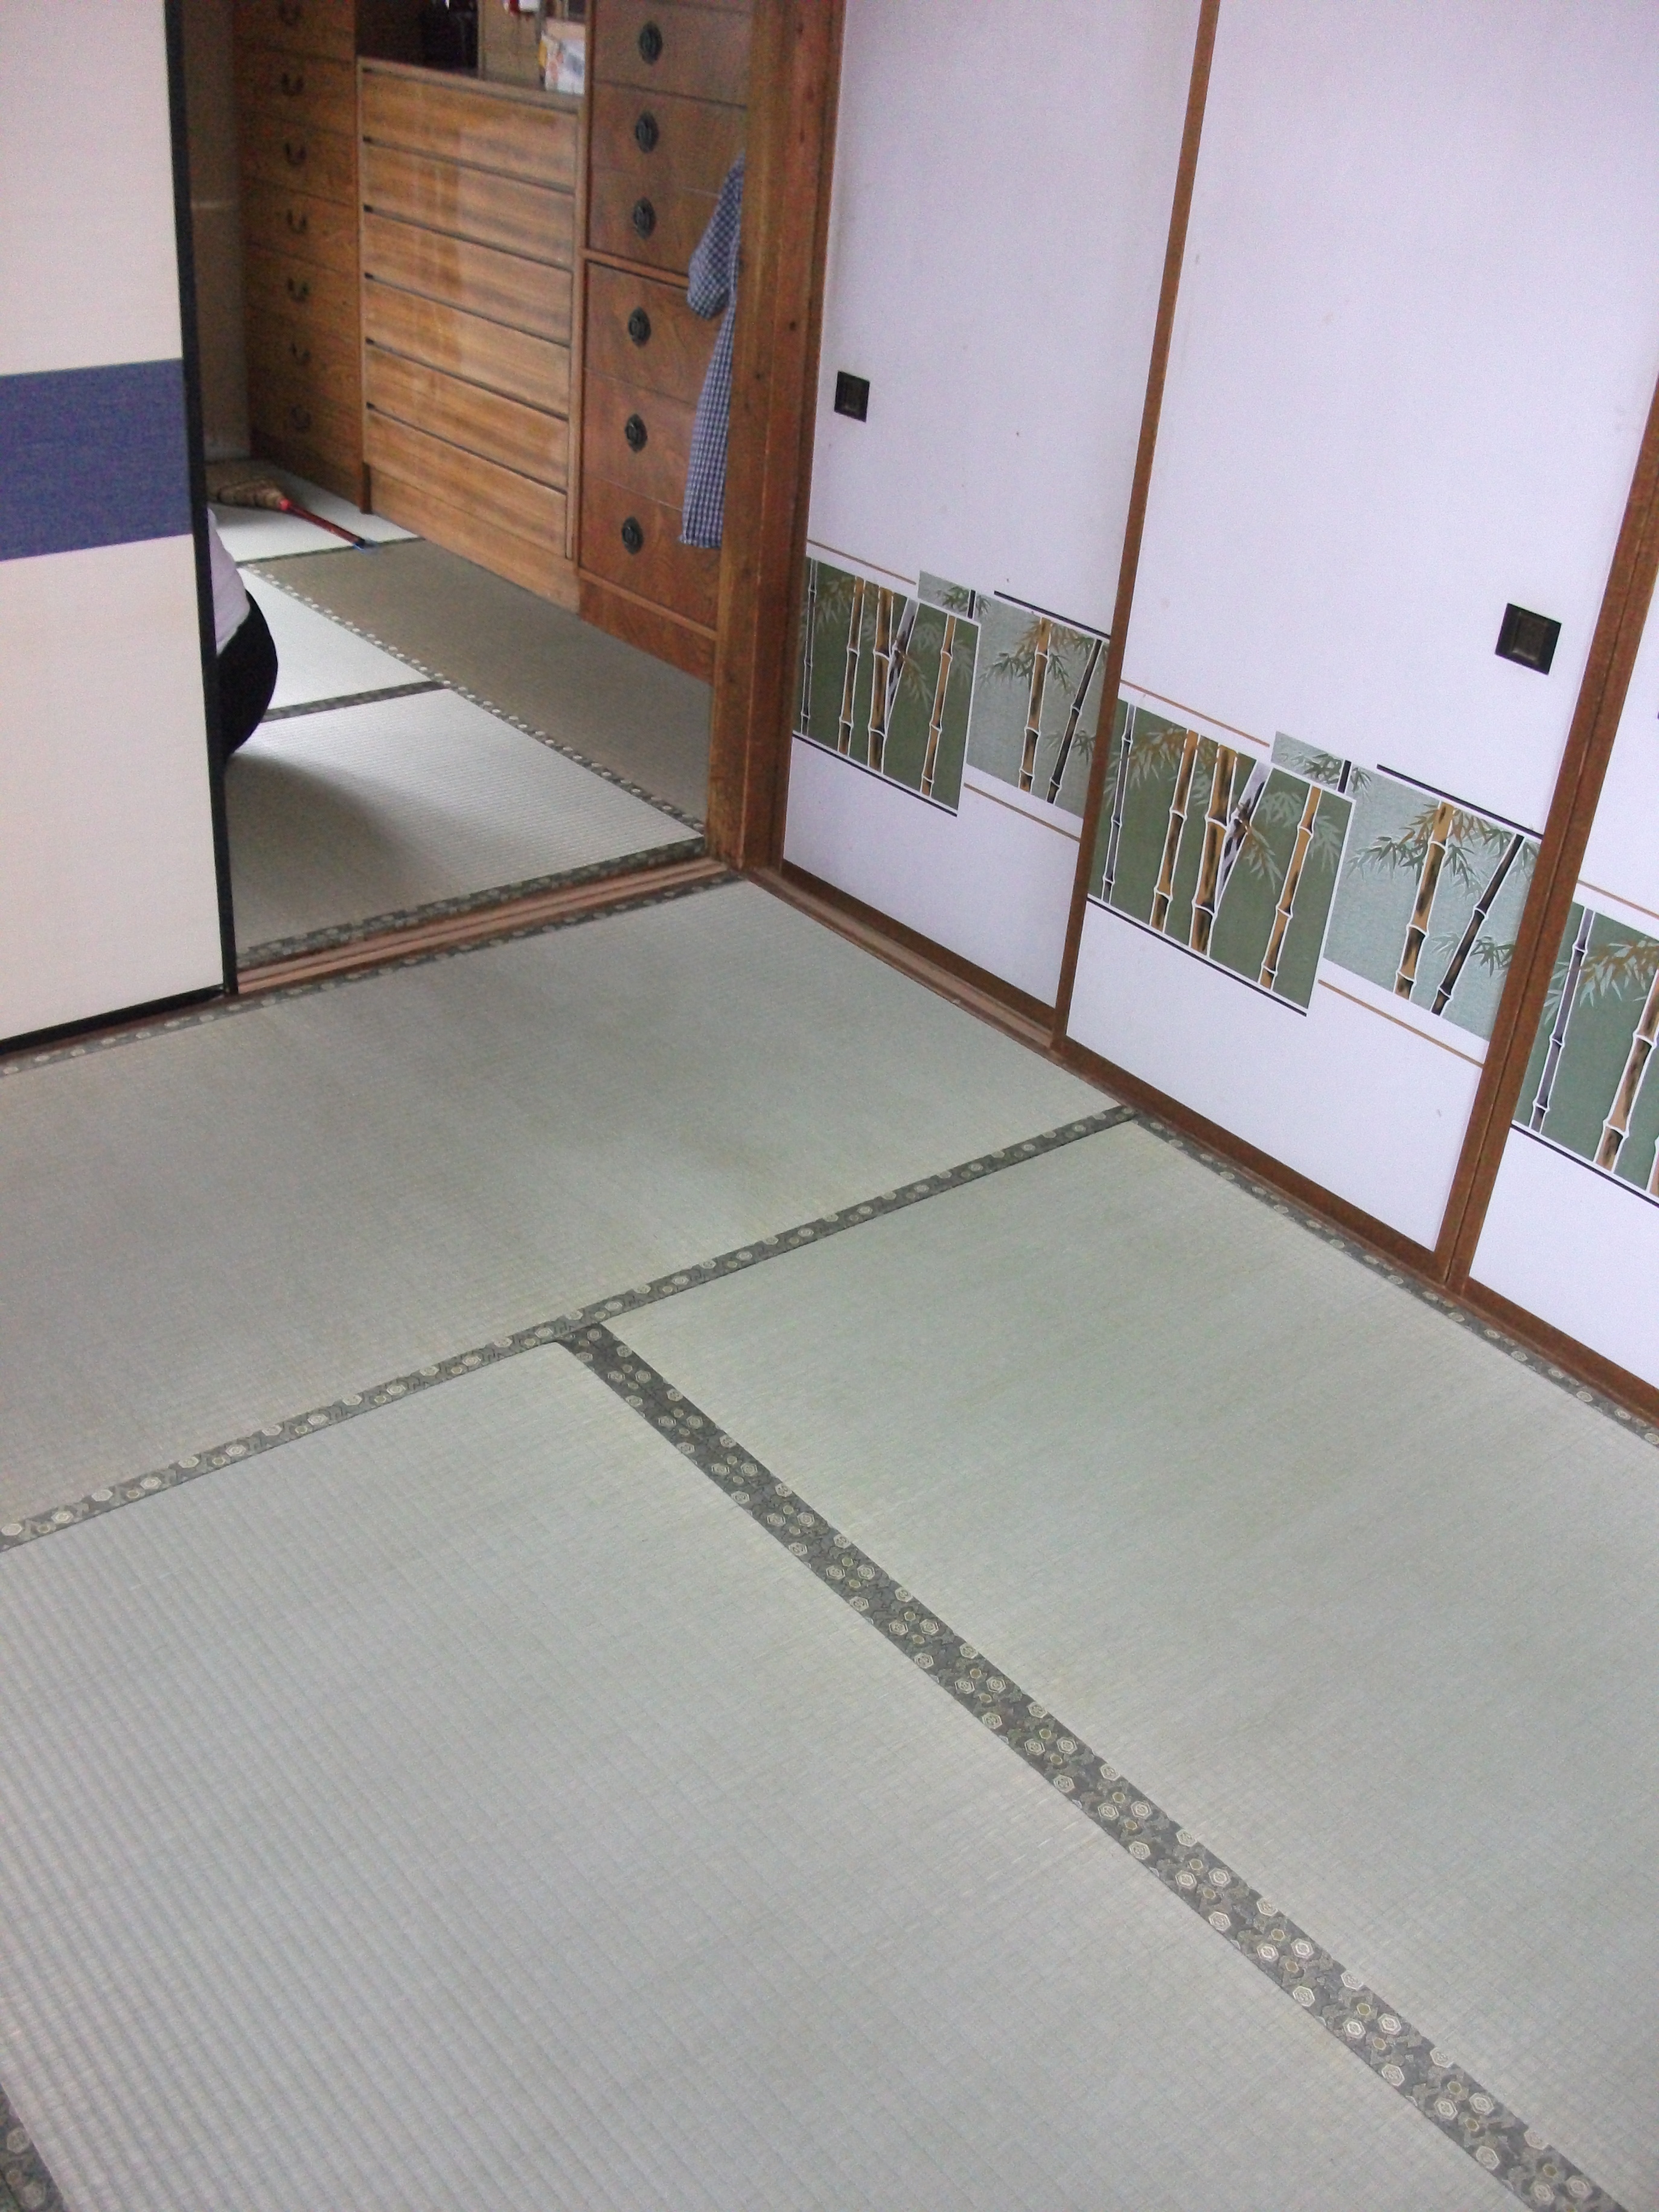 ふかふかする床と畳のリフォーム